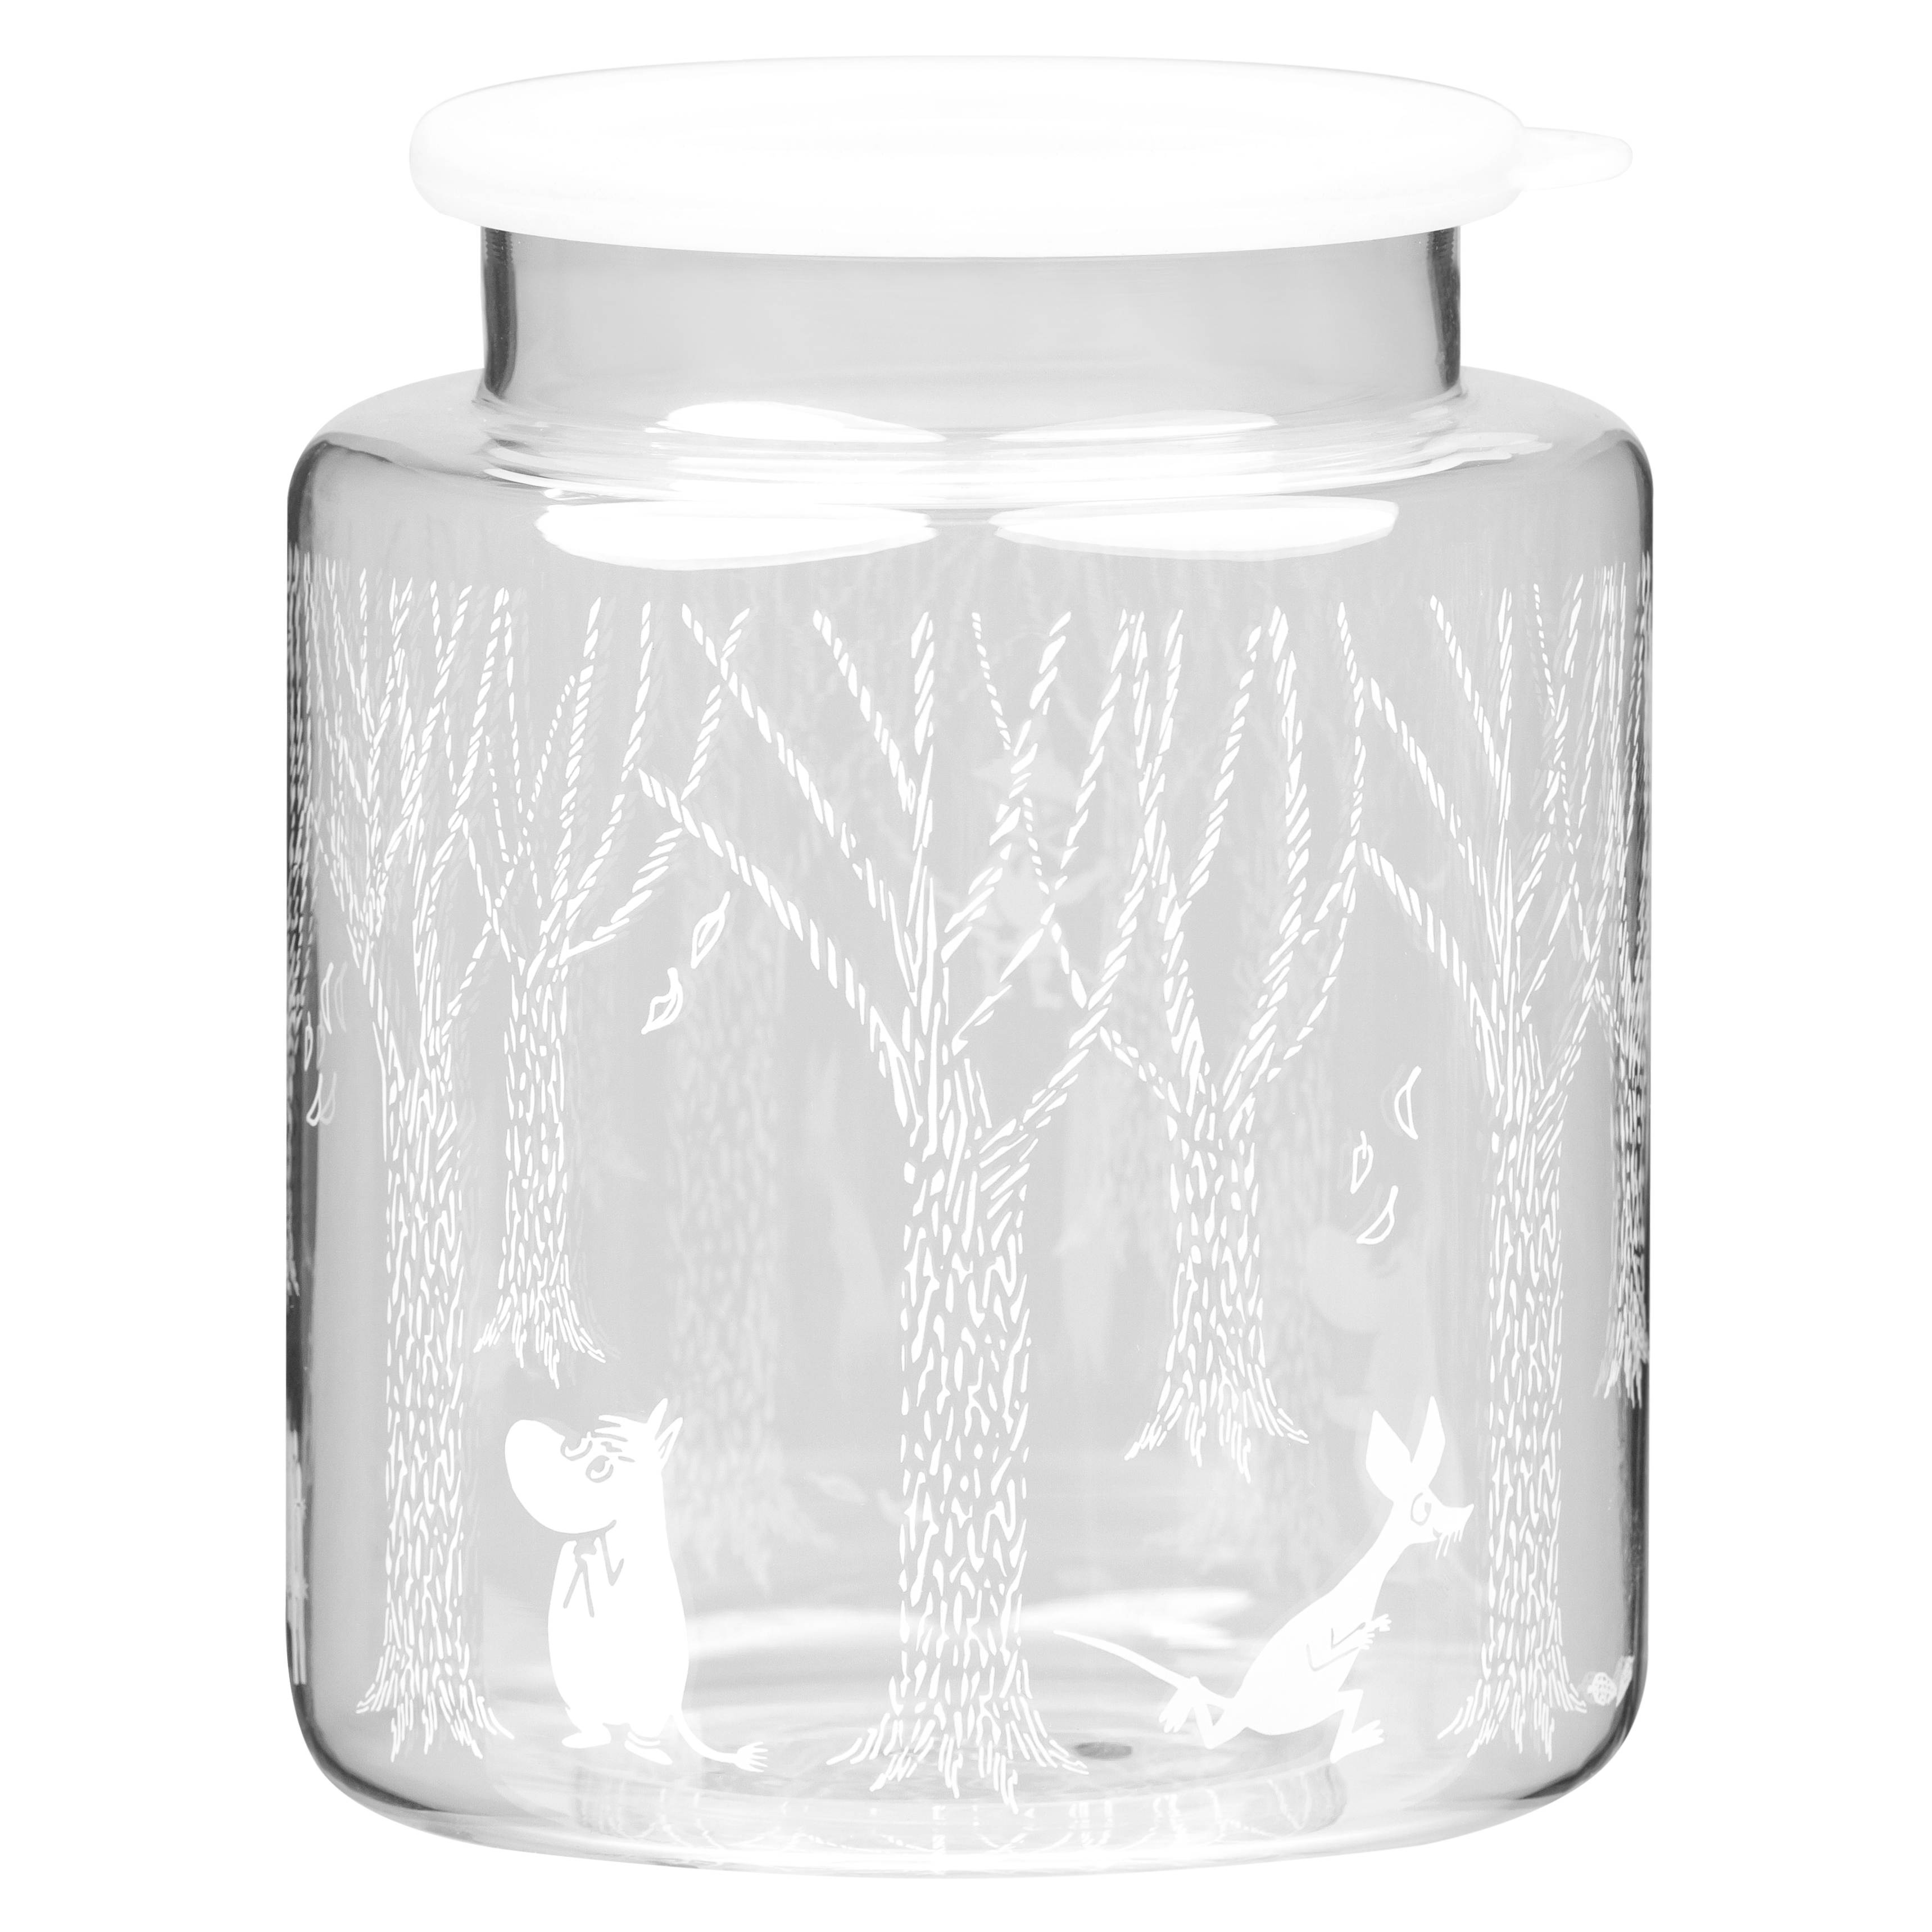 Pot de conservation en verre décor forêt Muurla - La déco 2B